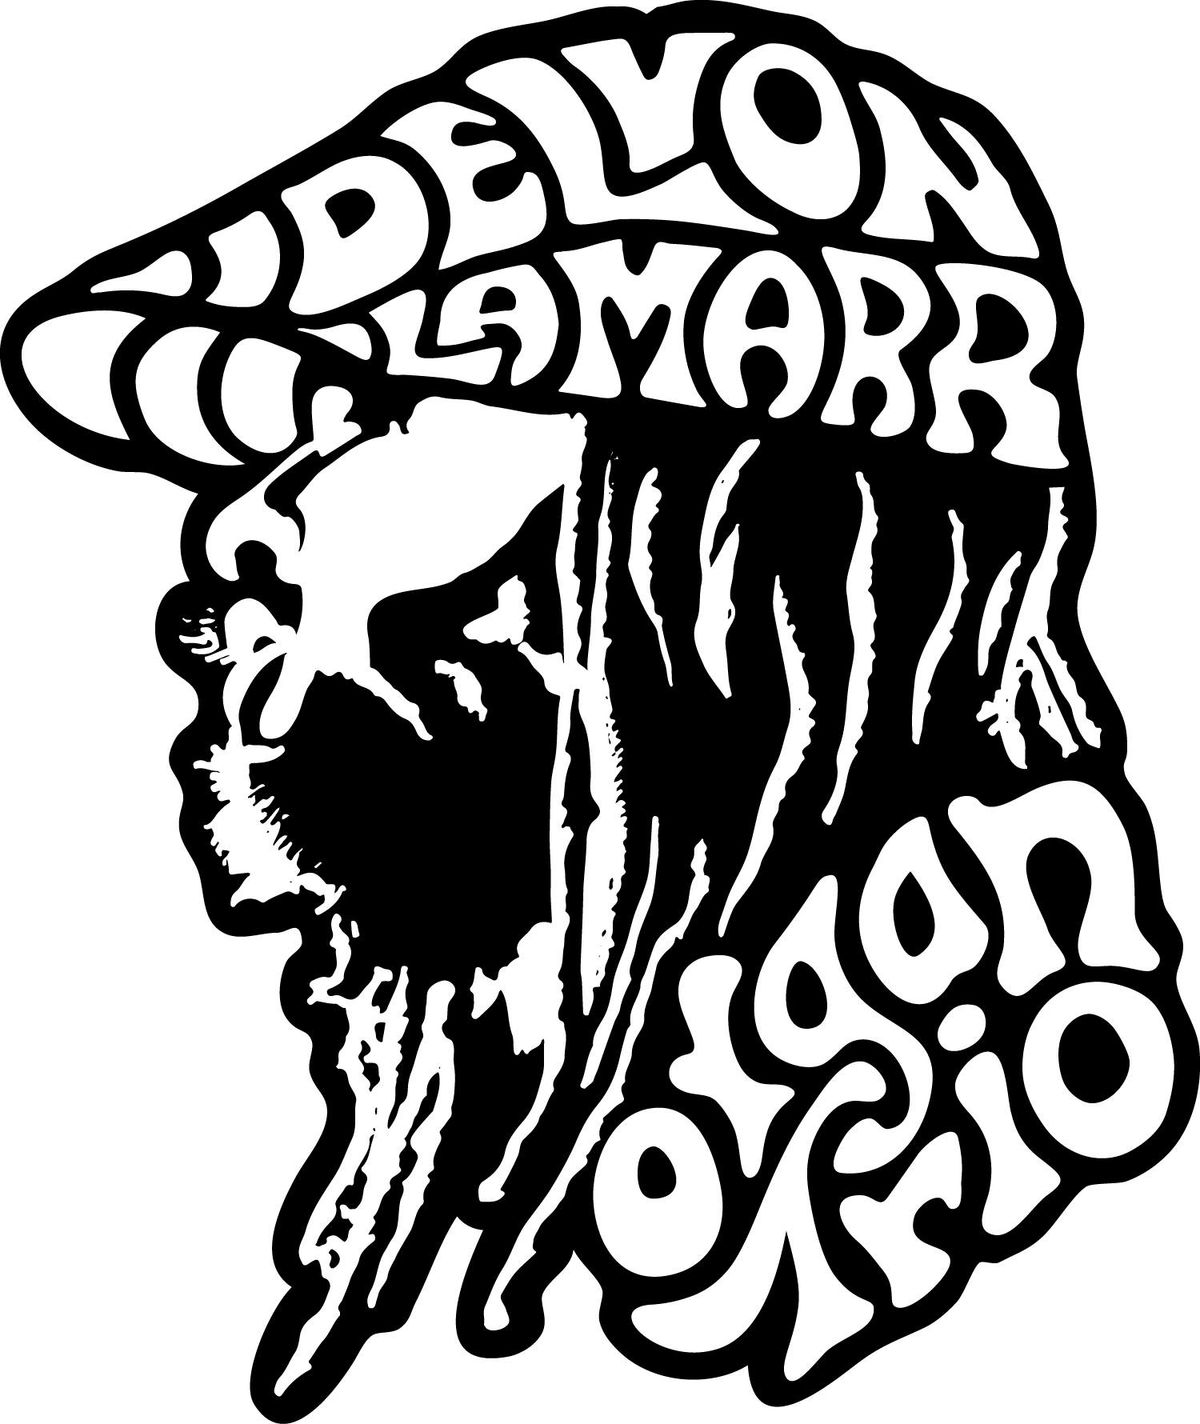 Delvon Lamarr Organ Trio - Late Show